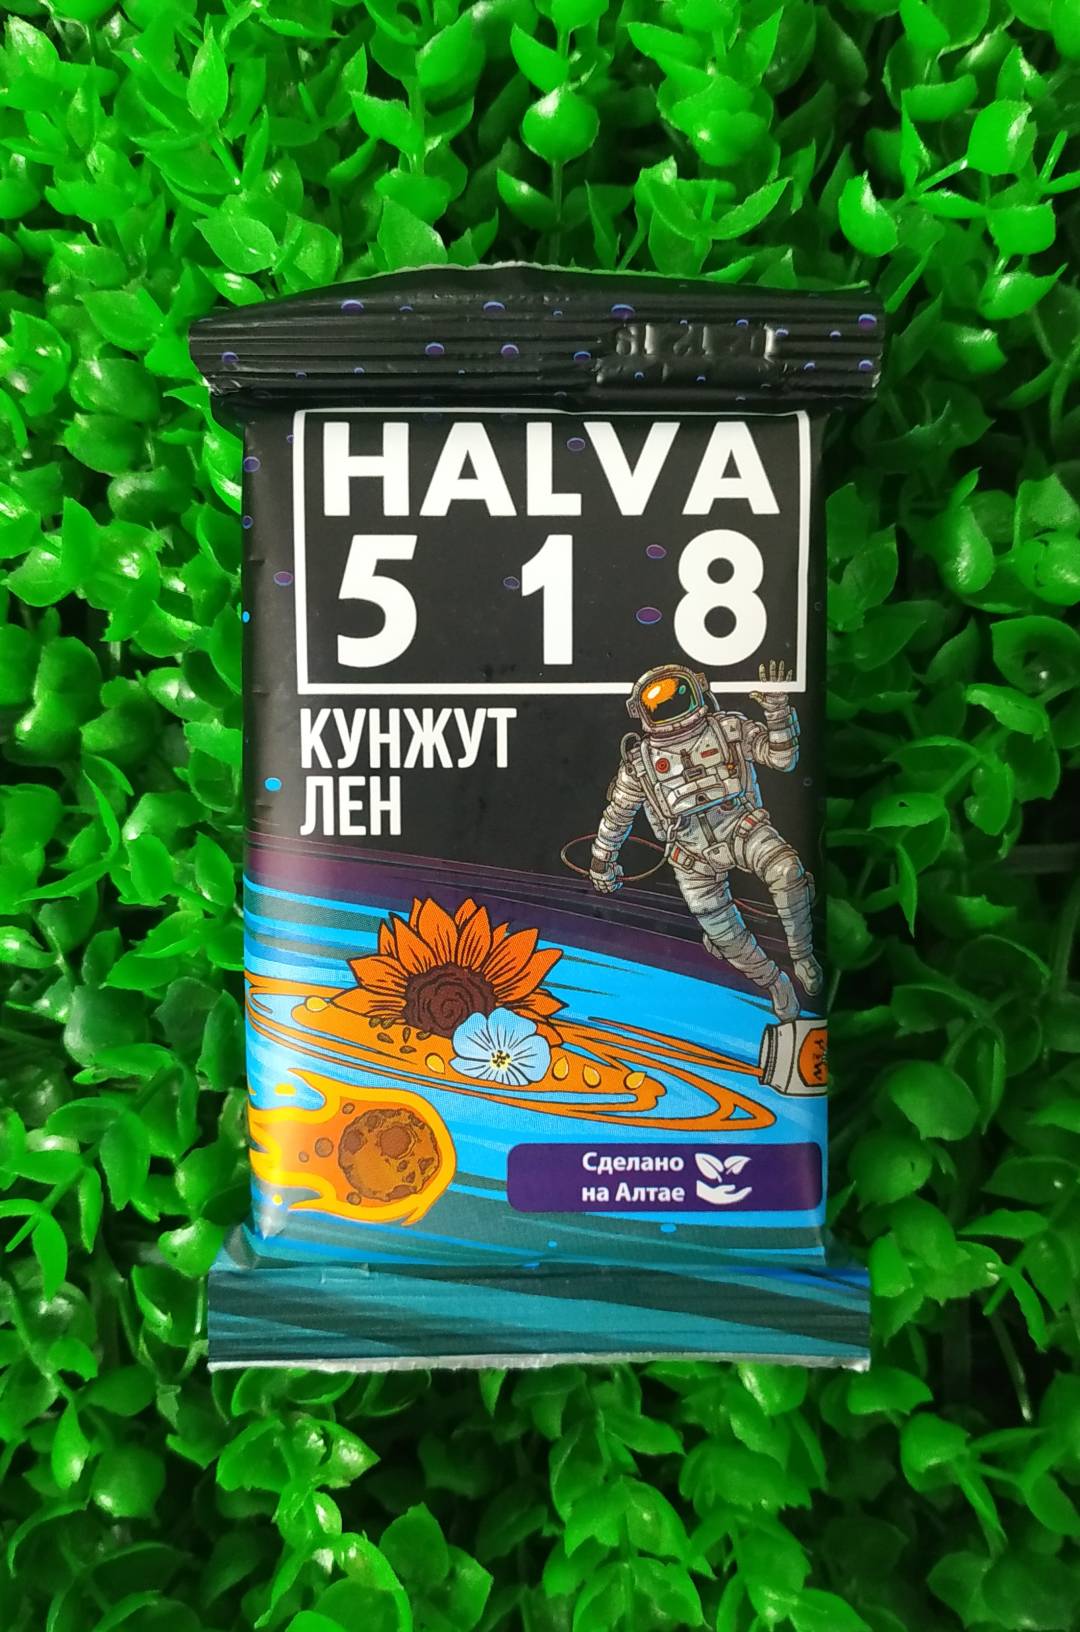 Купить онлайн Медово-халвичный десерт HALVA 518 (кунжут + лен), 120 гр в интернет-магазине Беришка с доставкой по Хабаровску и по России недорого.